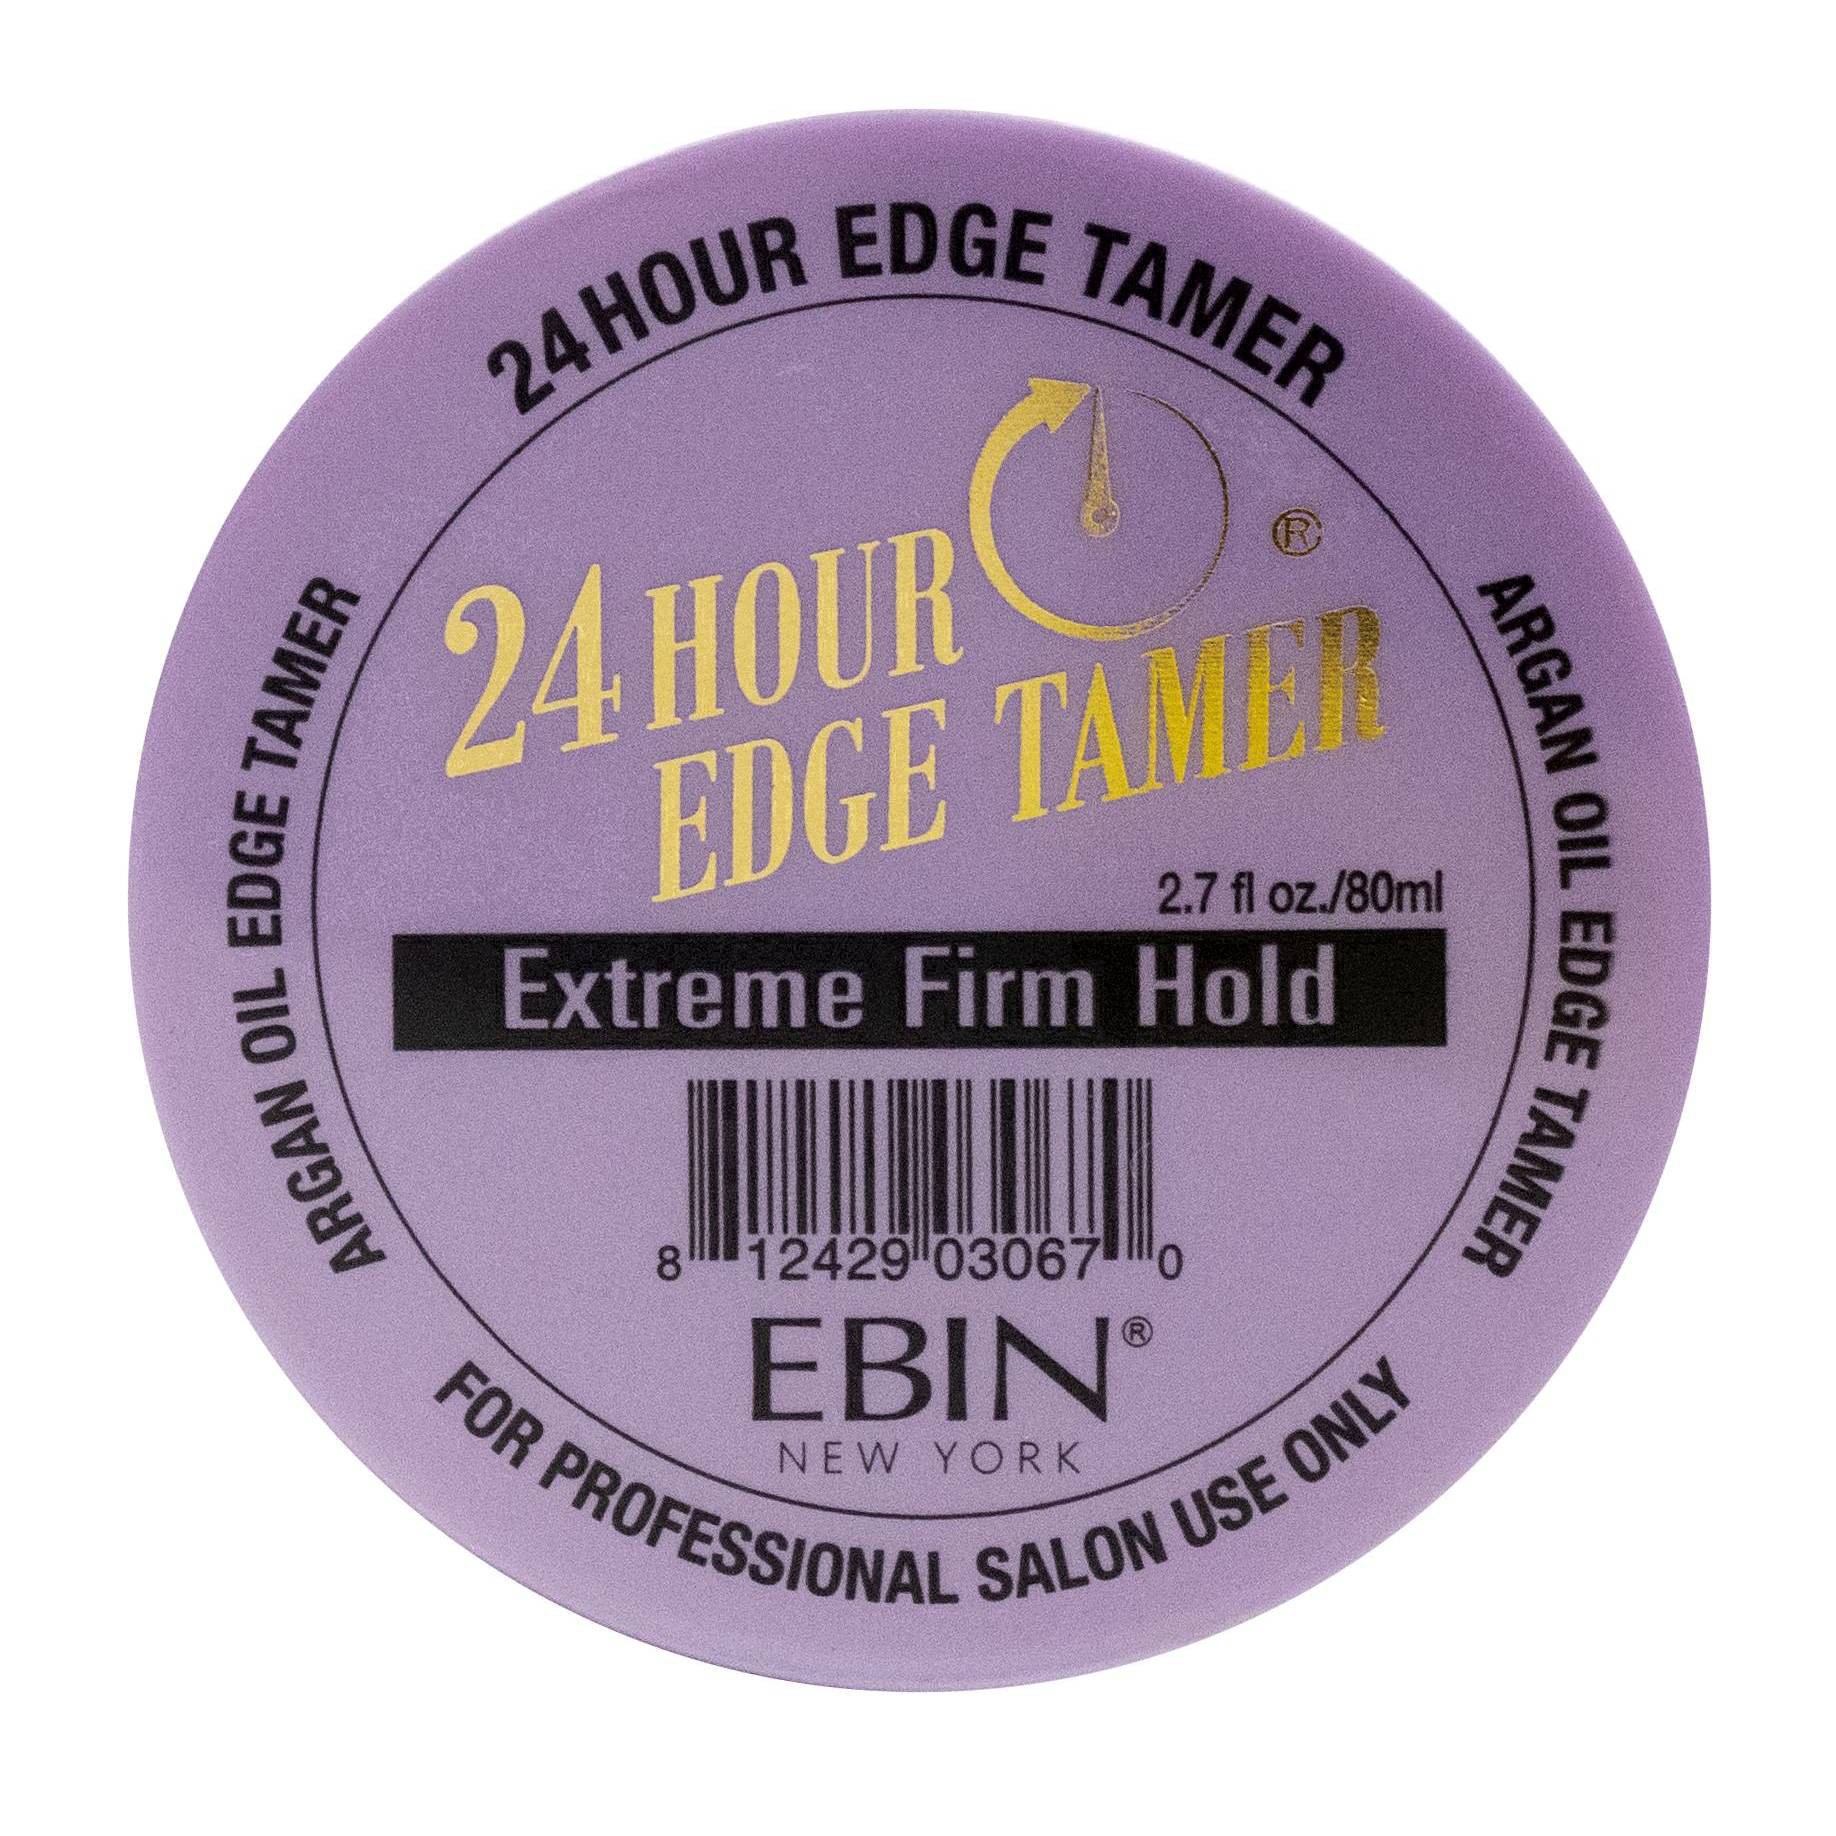 slide 38 of 53, EBIN Edge Tamer Extreme Firm Hold, 2.7 oz